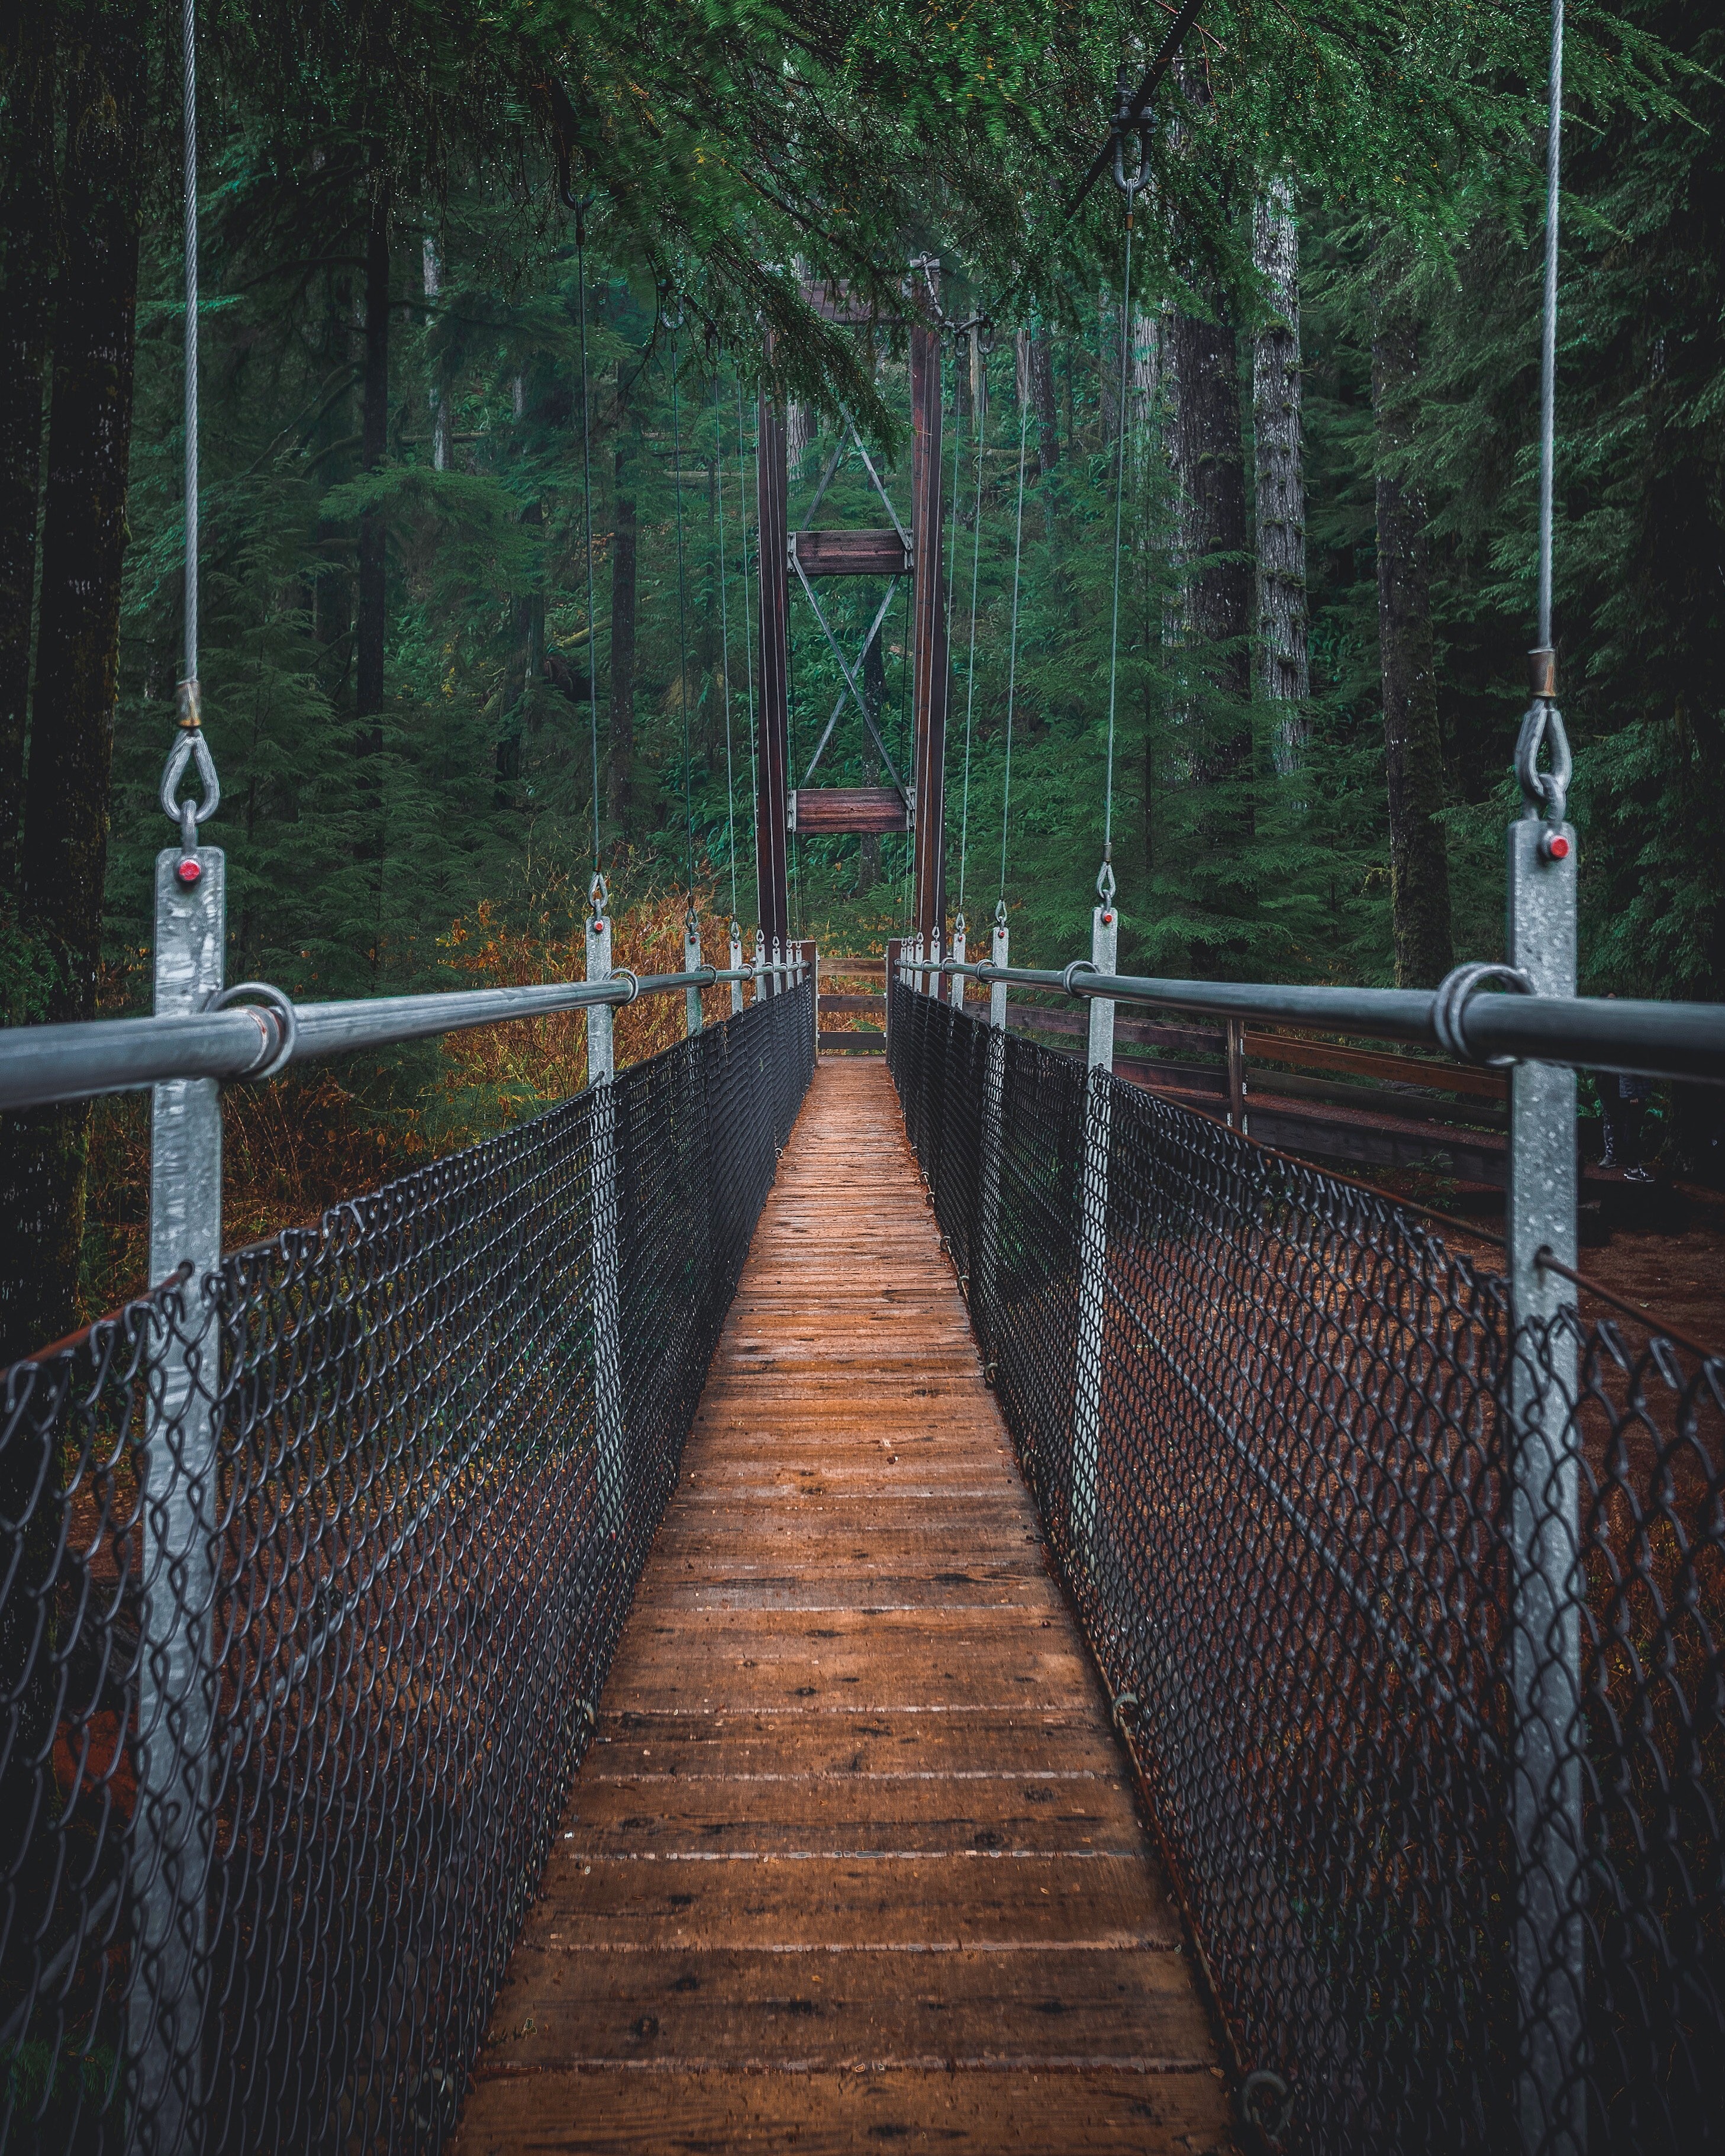 A suspension footbridge